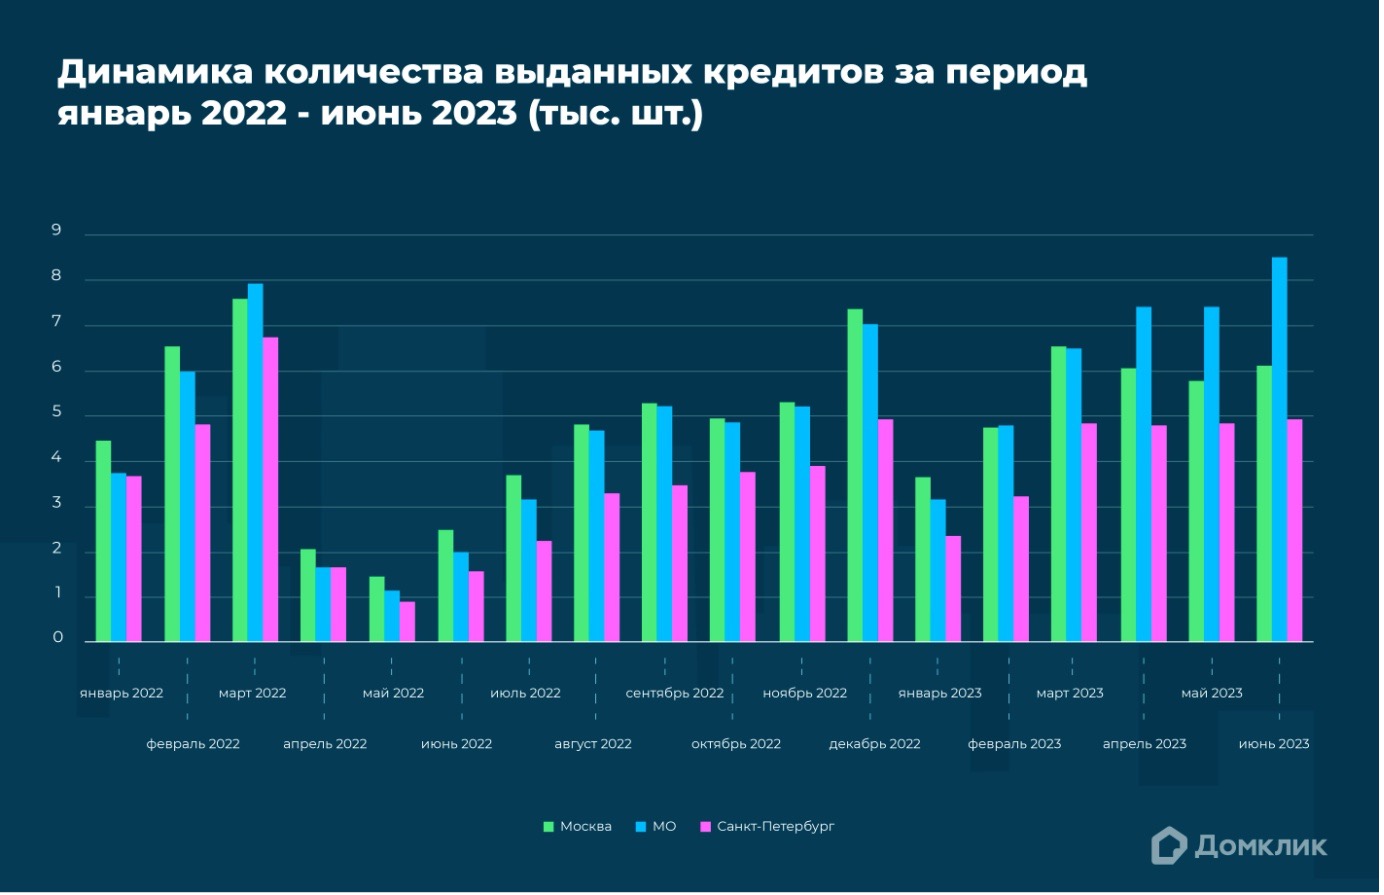 Динамика количества выдач ипотечных кредитов за 2022&ndash;2023 годы по Москве, Подмосковью и Санкт-Петербургу